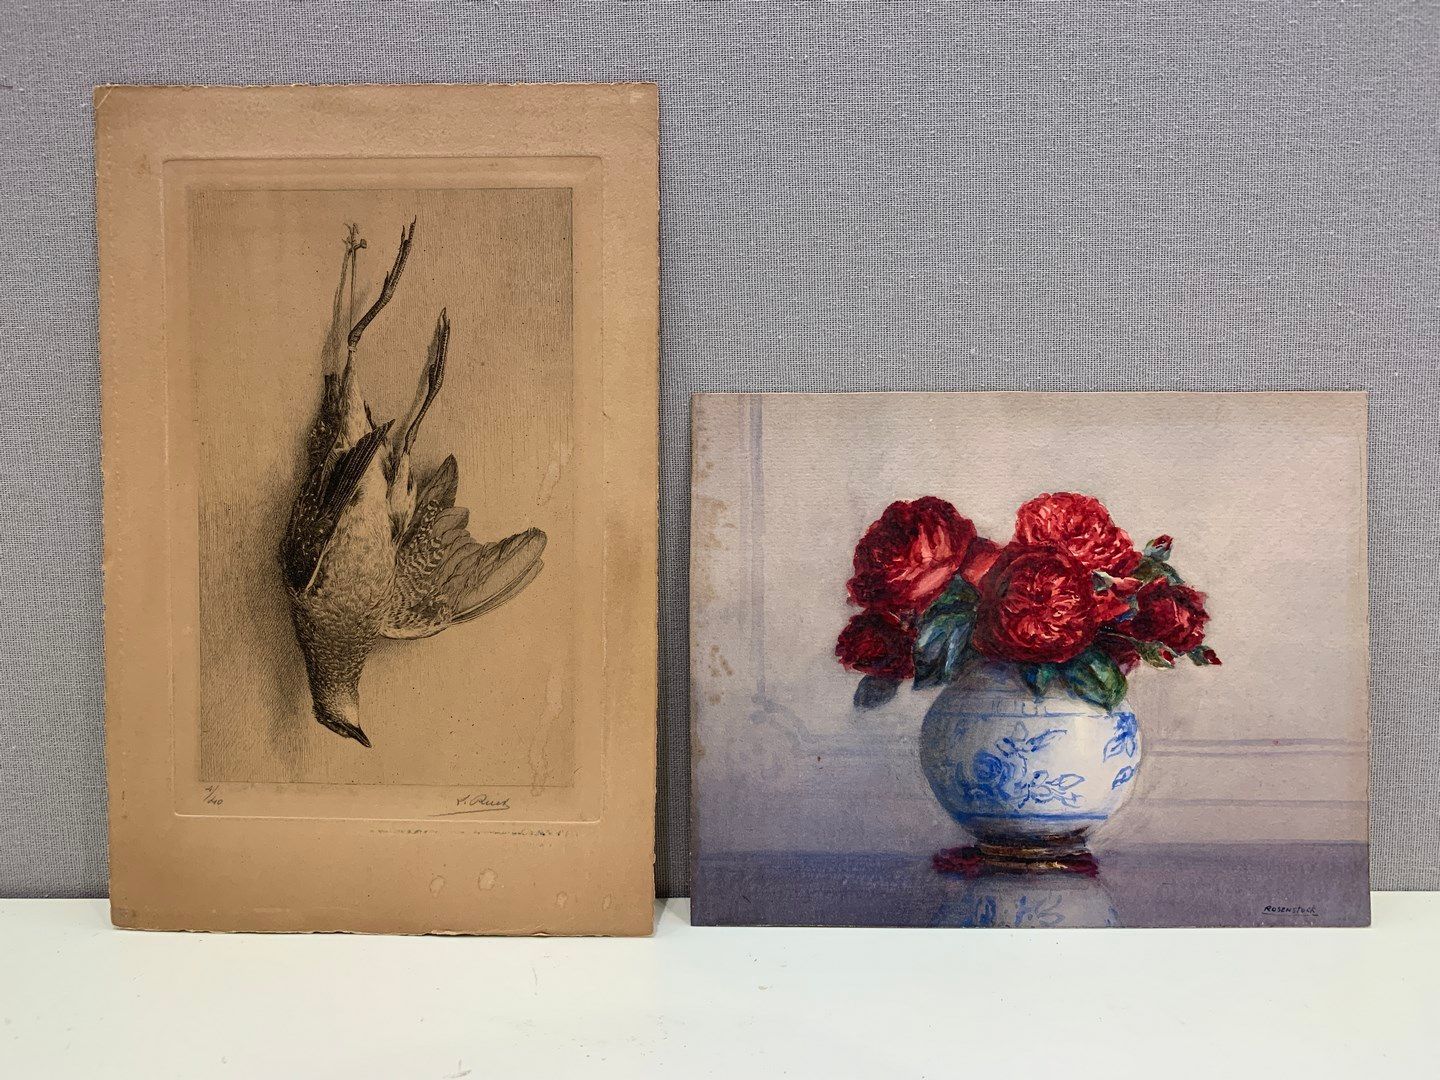 Null 罗森斯托克-伊西多尔

玫瑰花束

水彩画

污渍



附有一幅表现鸟类静物的蚀刻画。